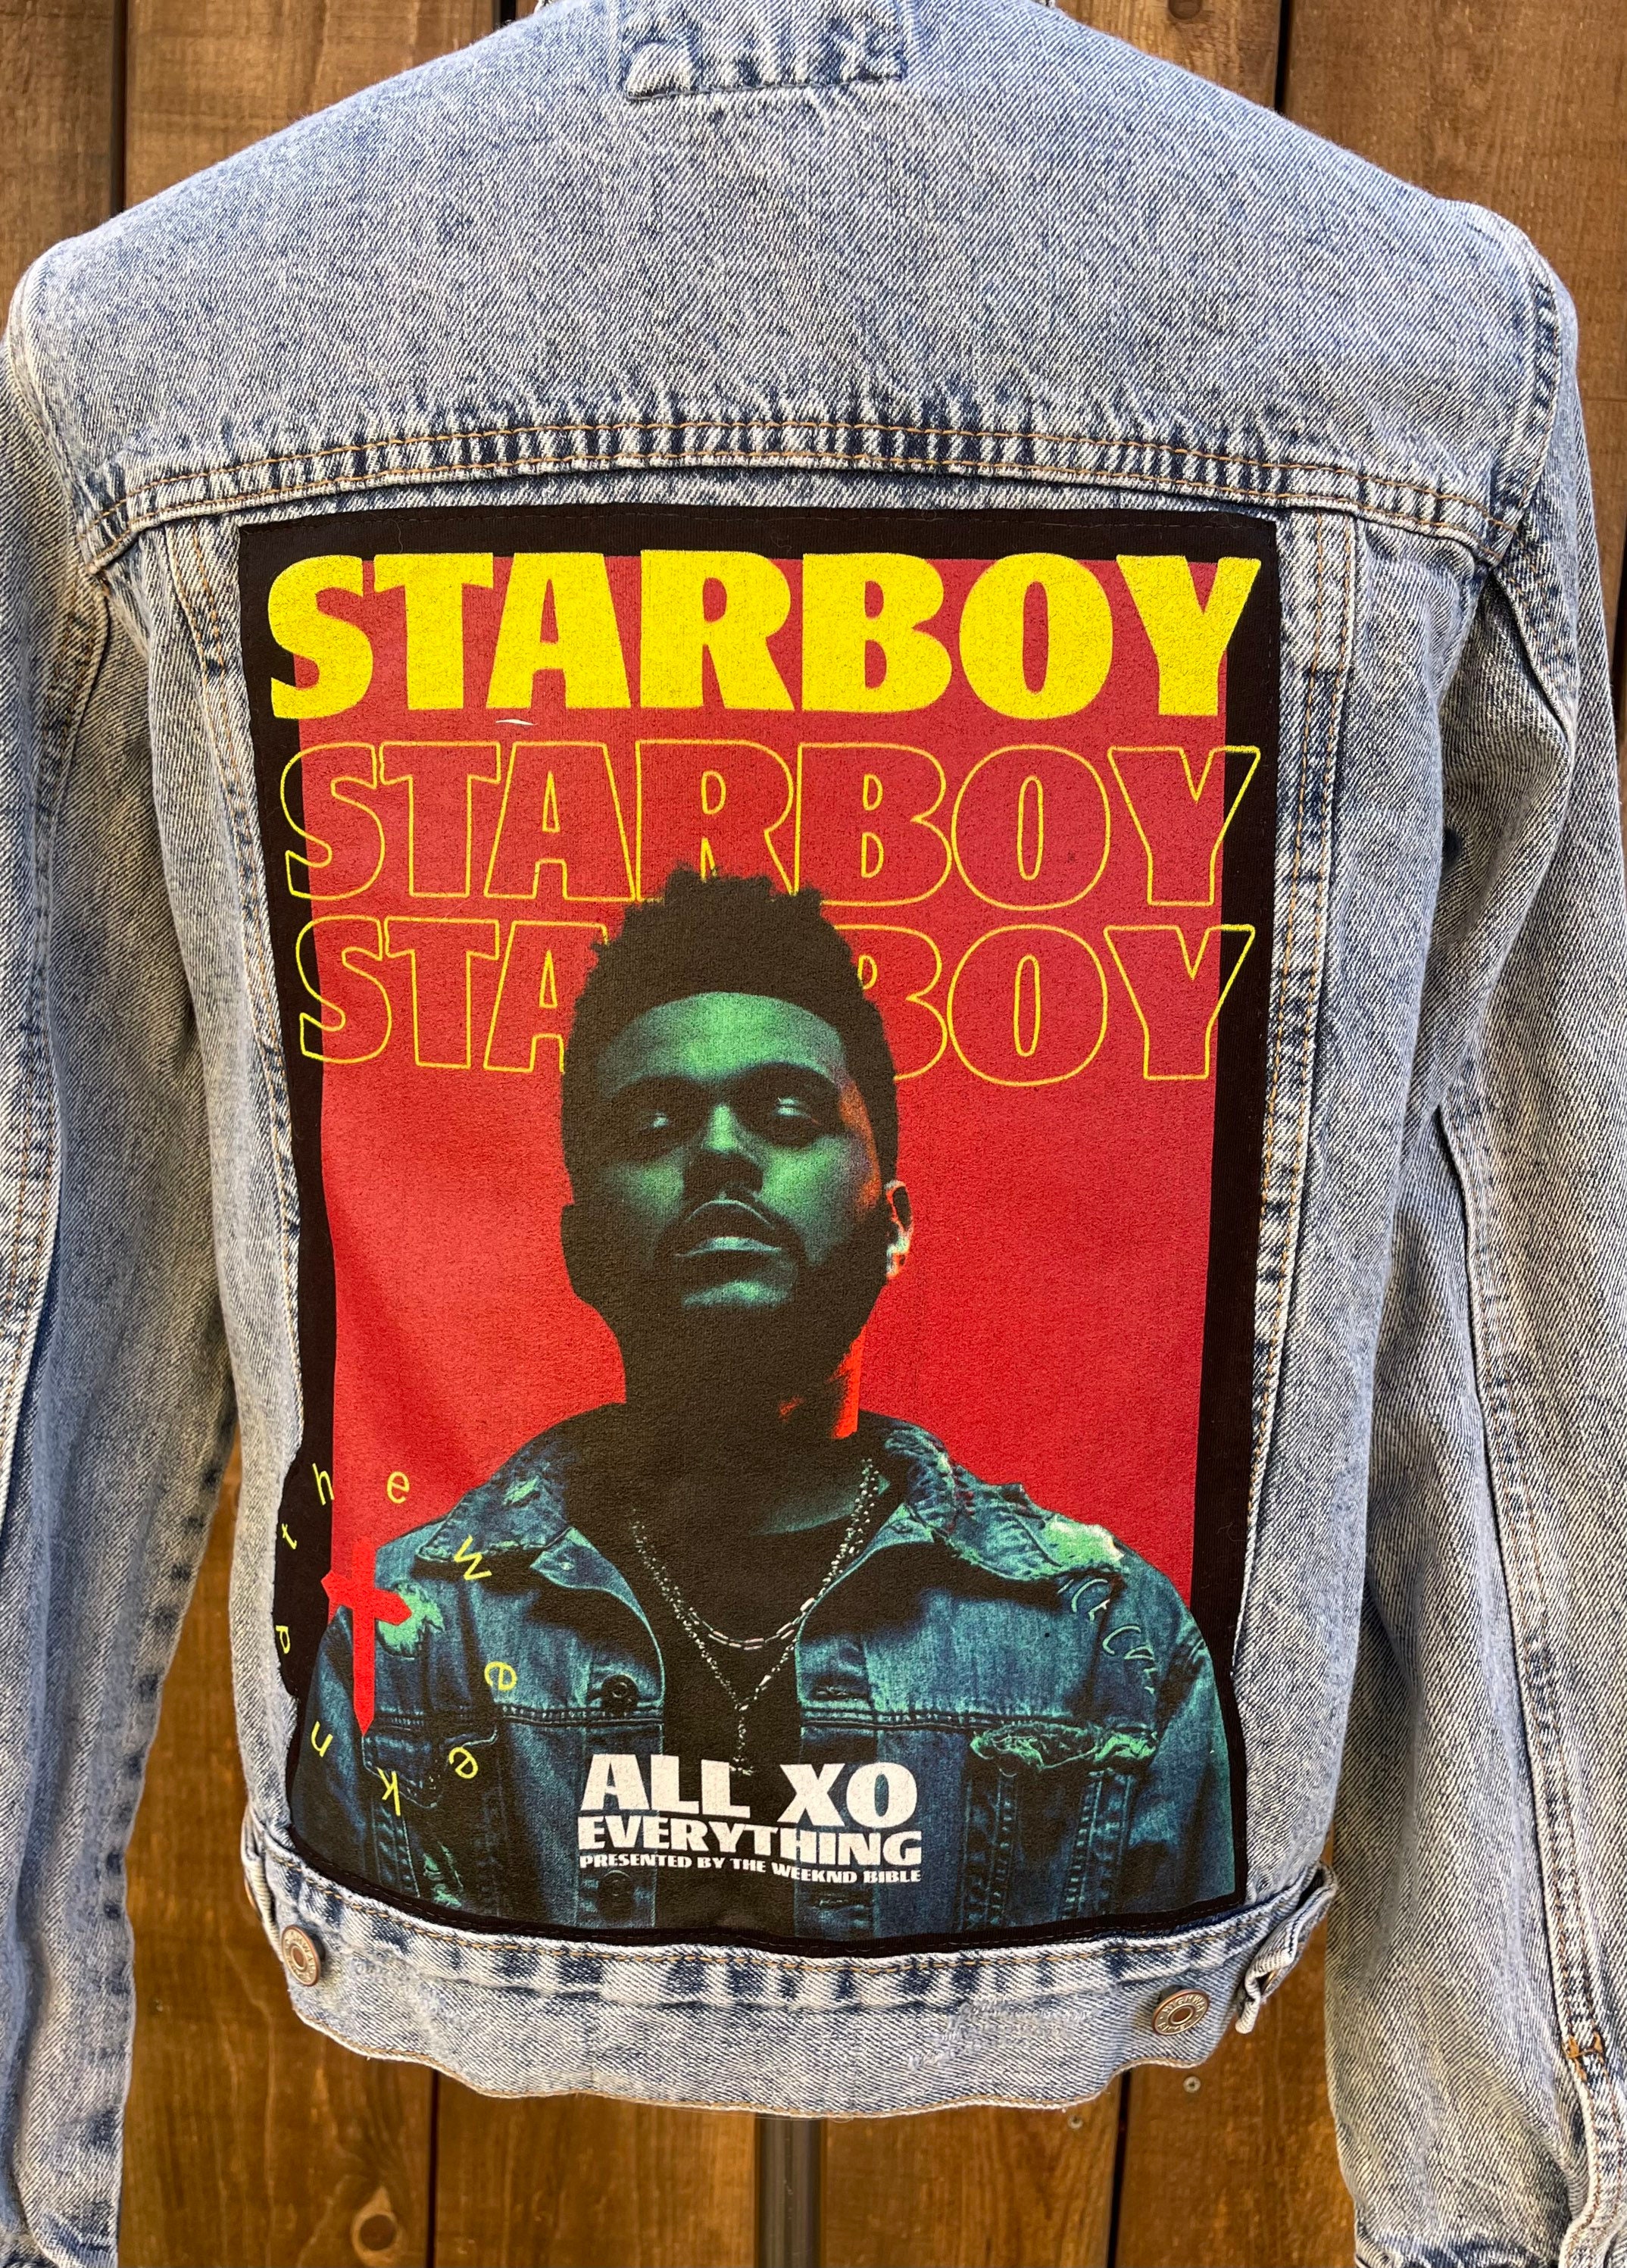 The Weeknd Vintage Denim Jacket